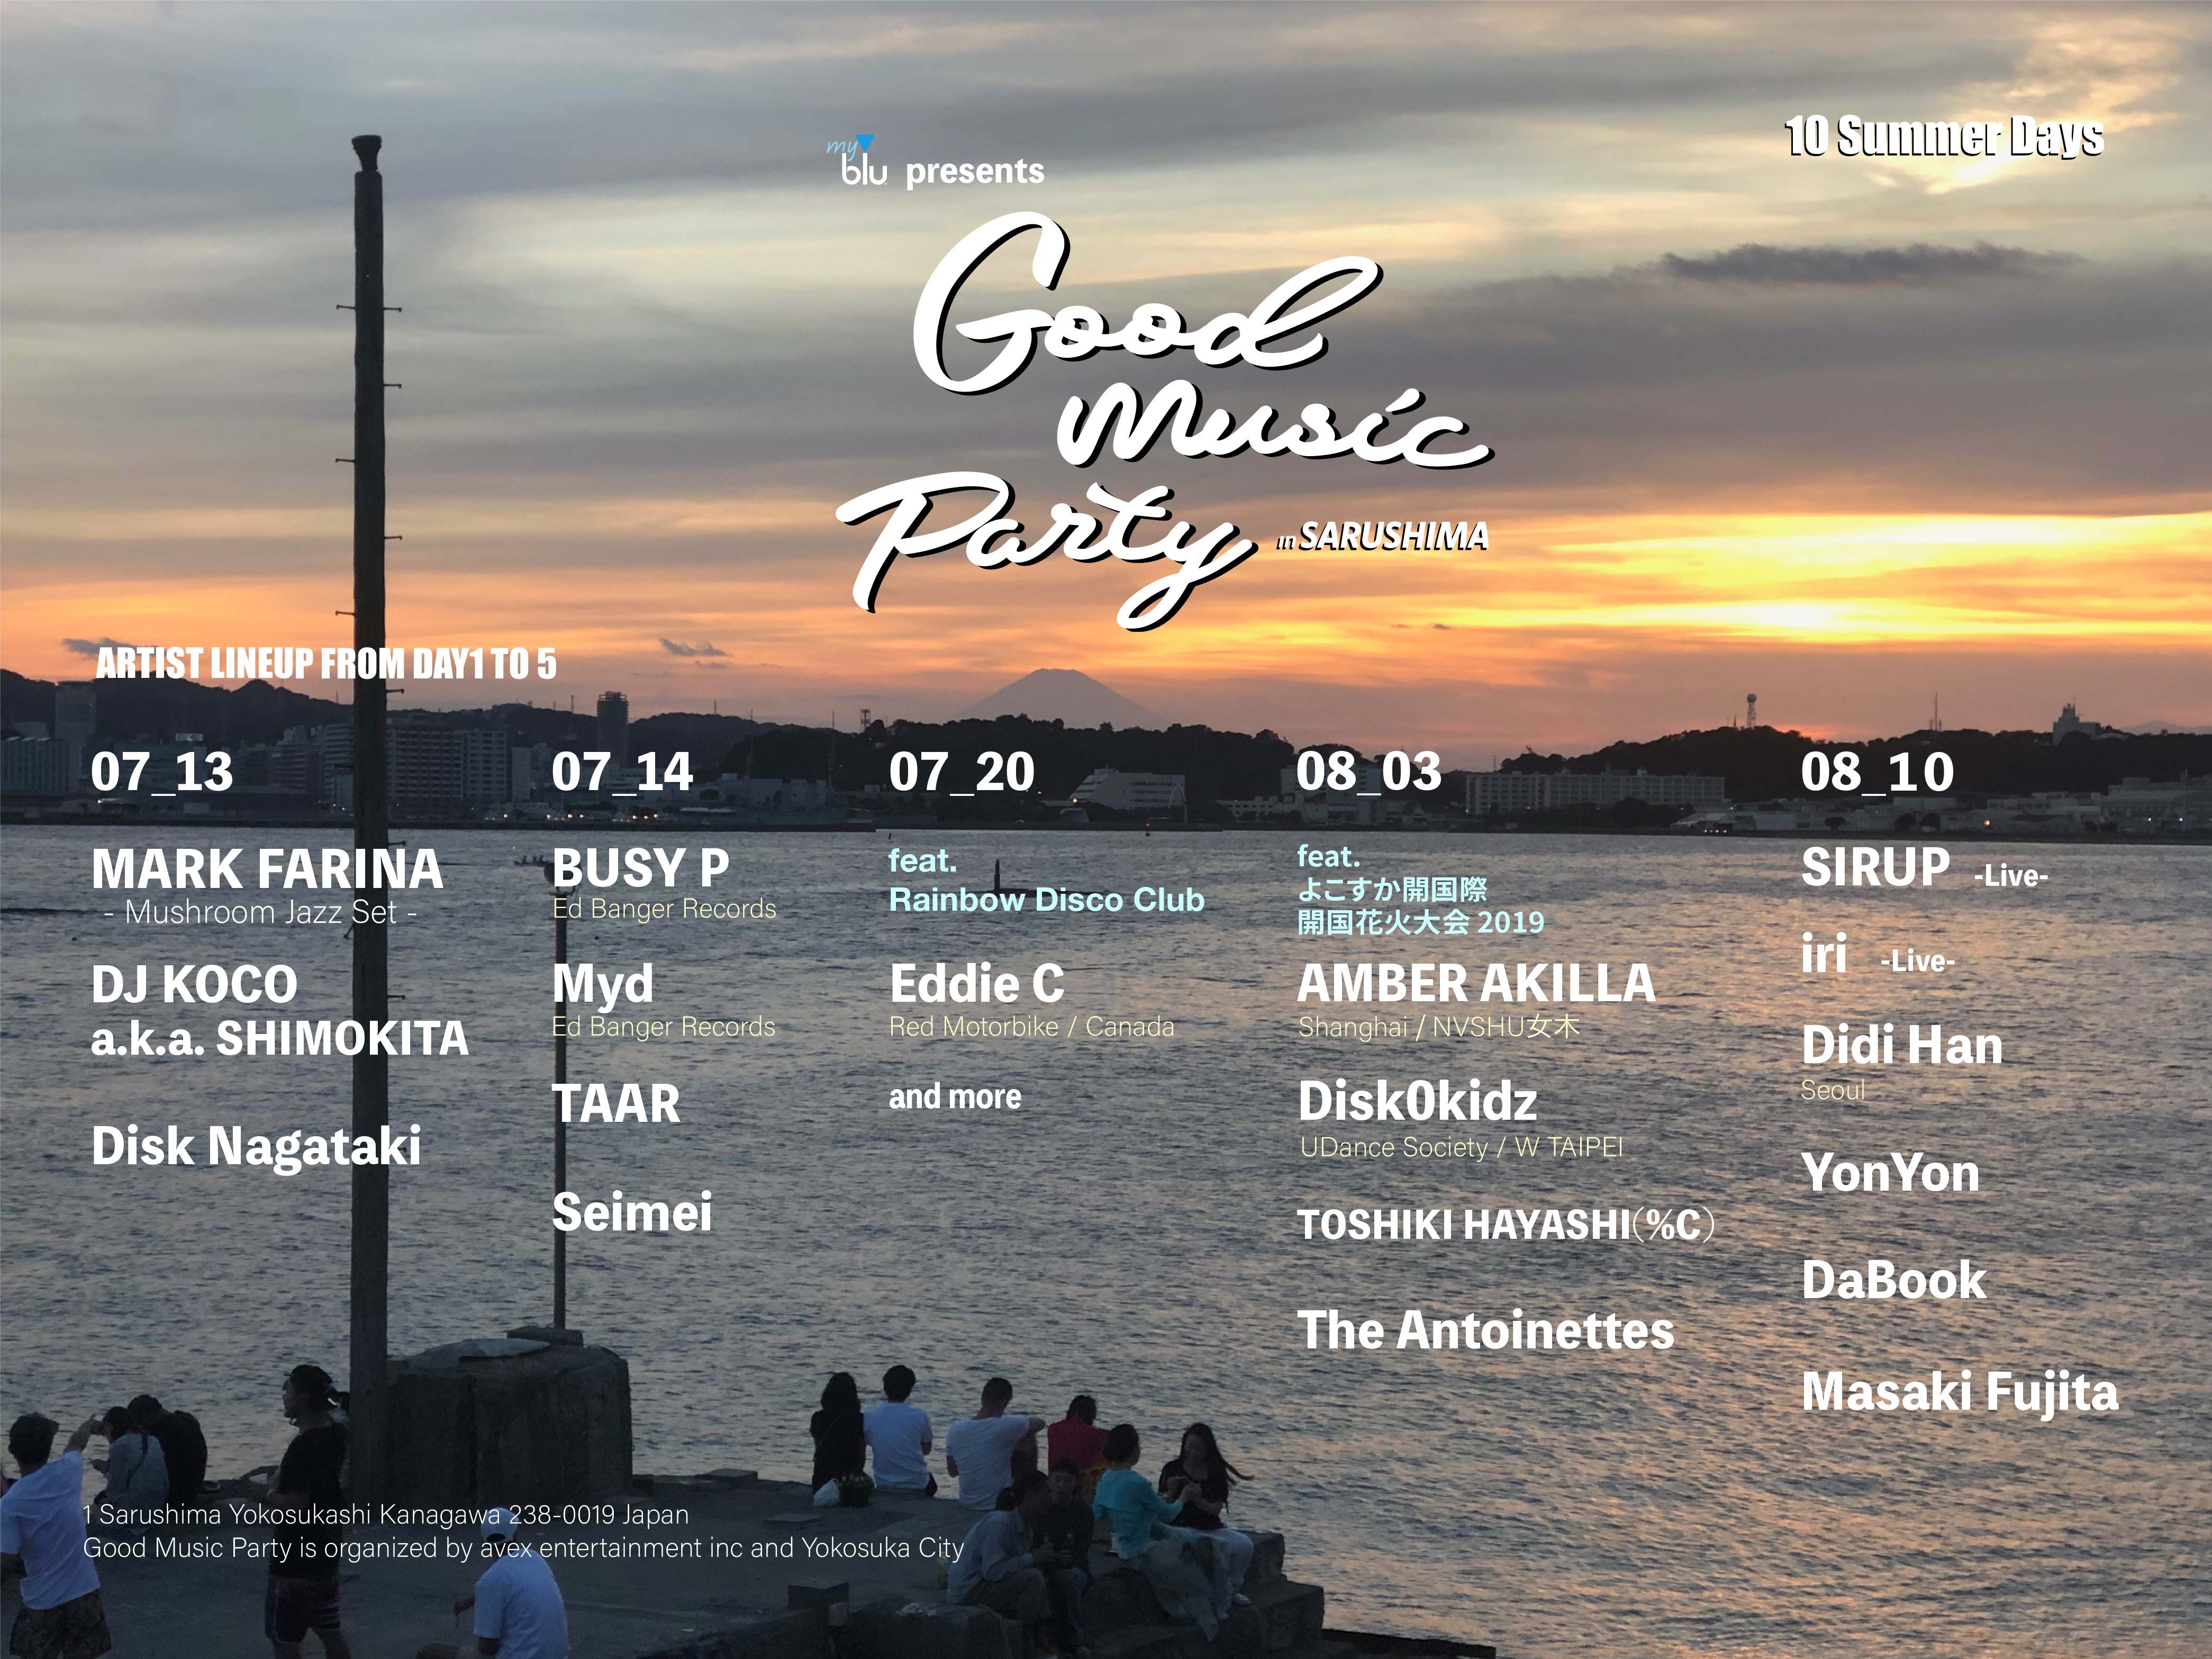 無人島・猿島で開催されるパーティー「Good Music Party」が前半5日間のラインナップを発表!MARK FARINA、Eddie Cなどが出演